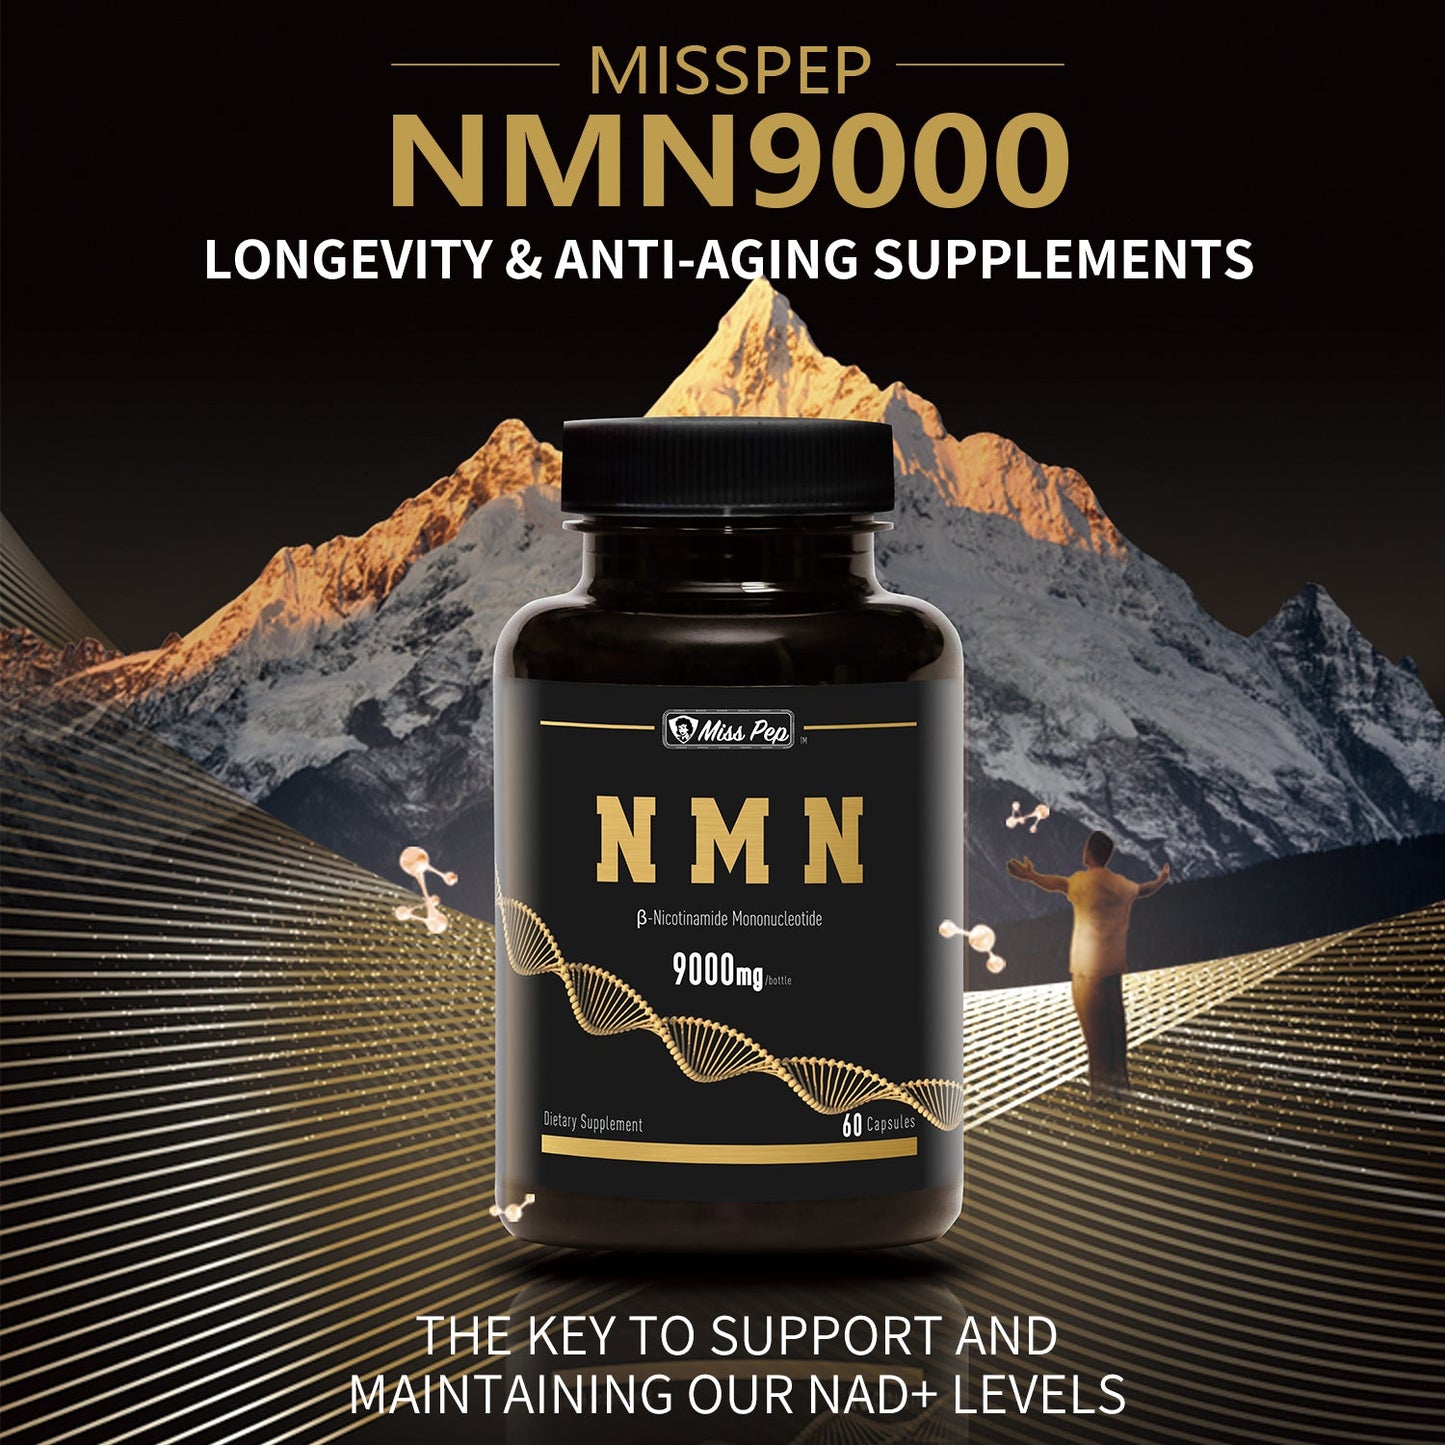 Misspep Anti-Aging NMN 9000 Capsules